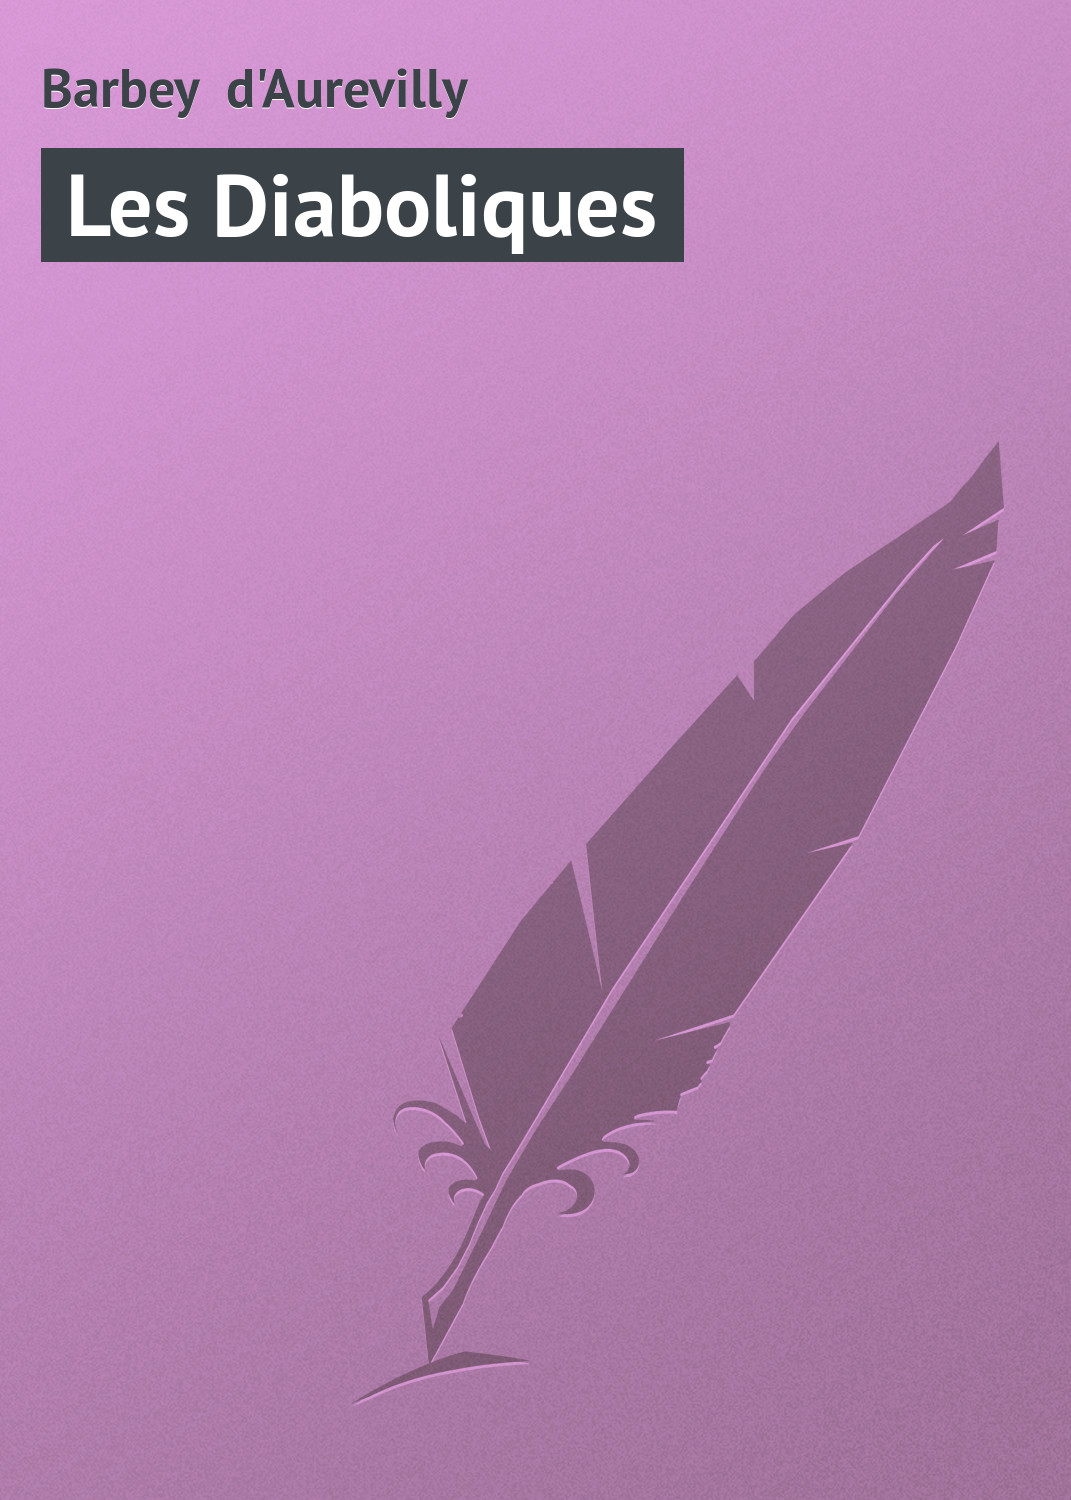 Книга Les Diaboliques из серии , созданная Barbey d'Aurevilly, может относится к жанру Зарубежная старинная литература, Зарубежная классика. Стоимость электронной книги Les Diaboliques с идентификатором 21104902 составляет 5.99 руб.